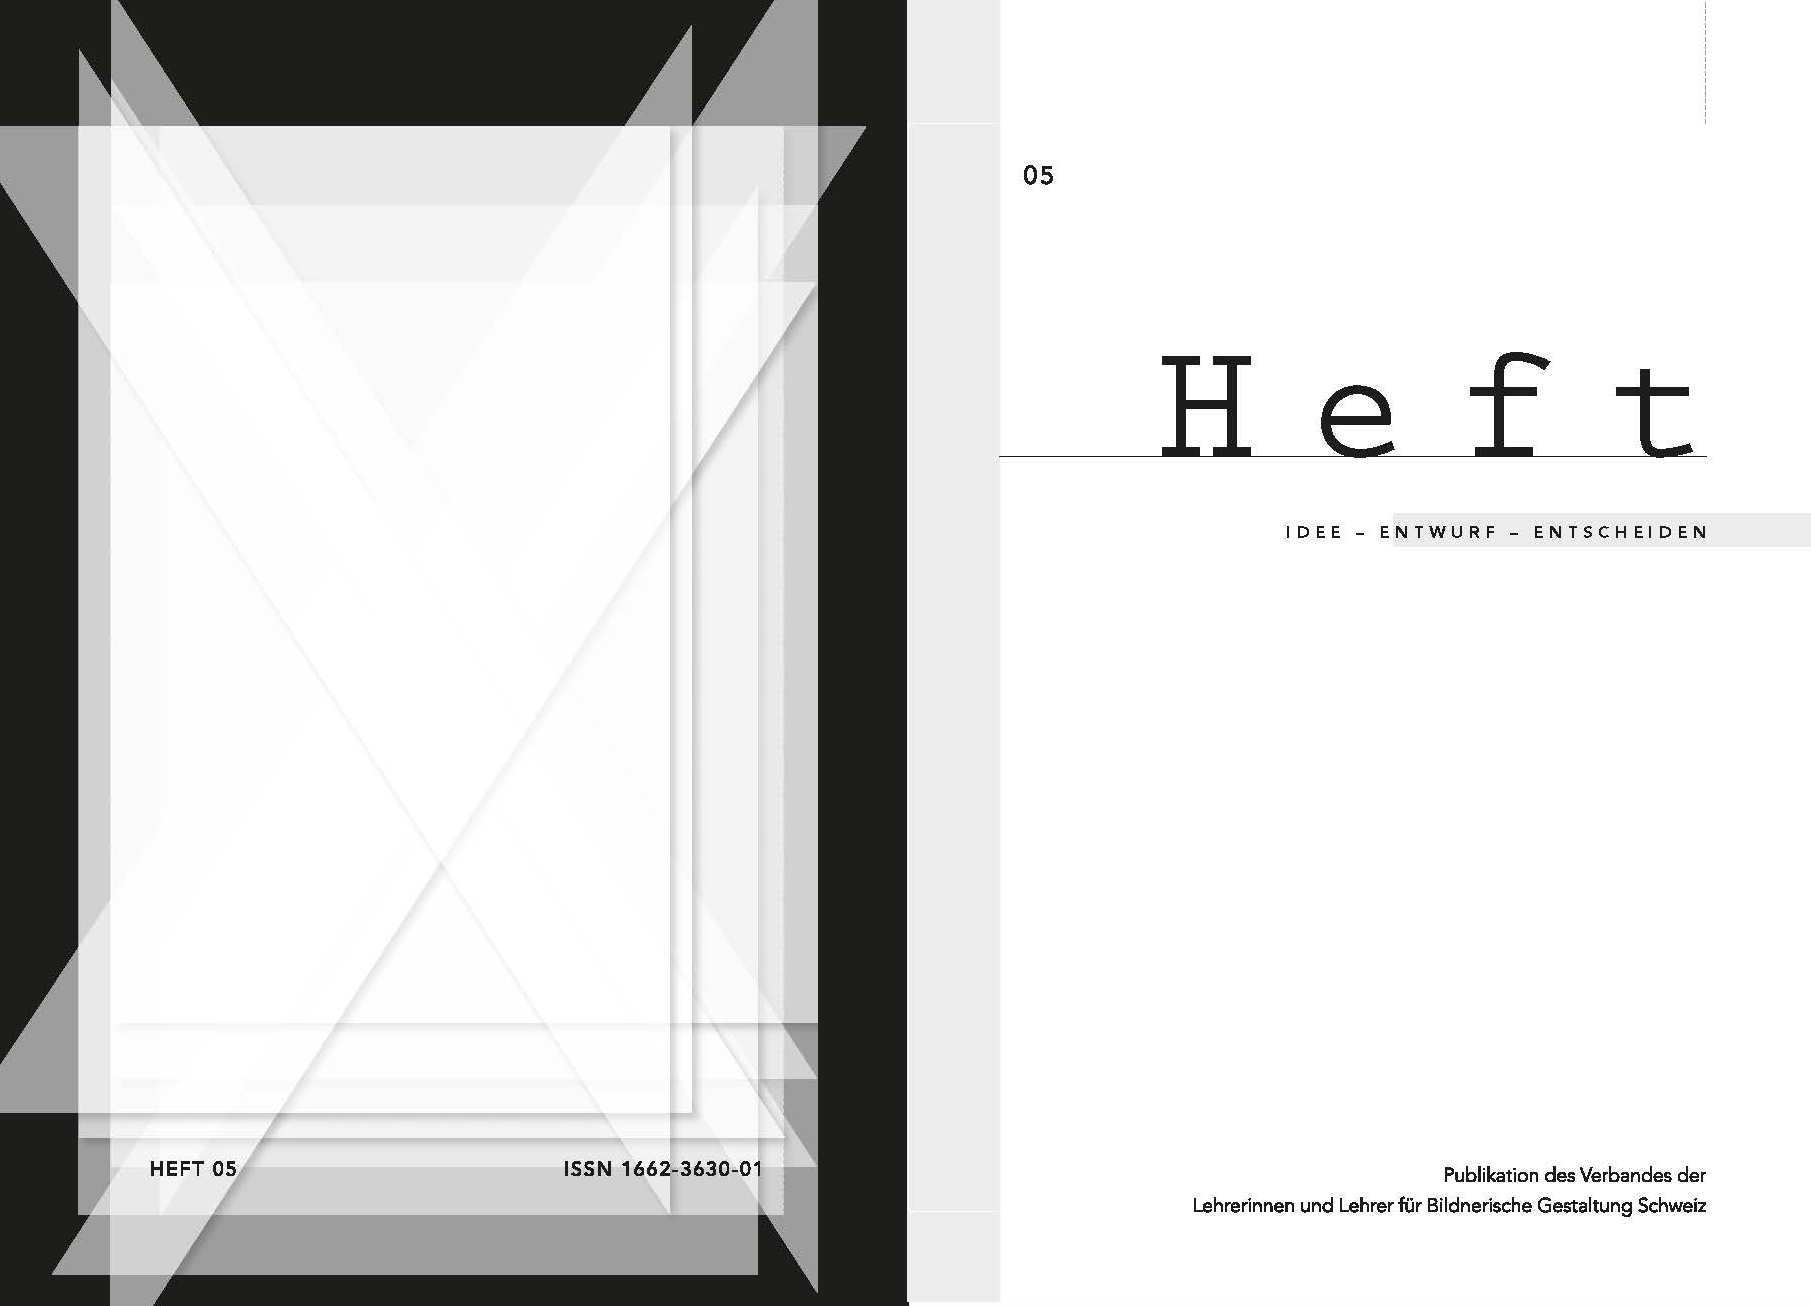 Heft 05 "Idee - Entwurf - Entscheiden" 2012